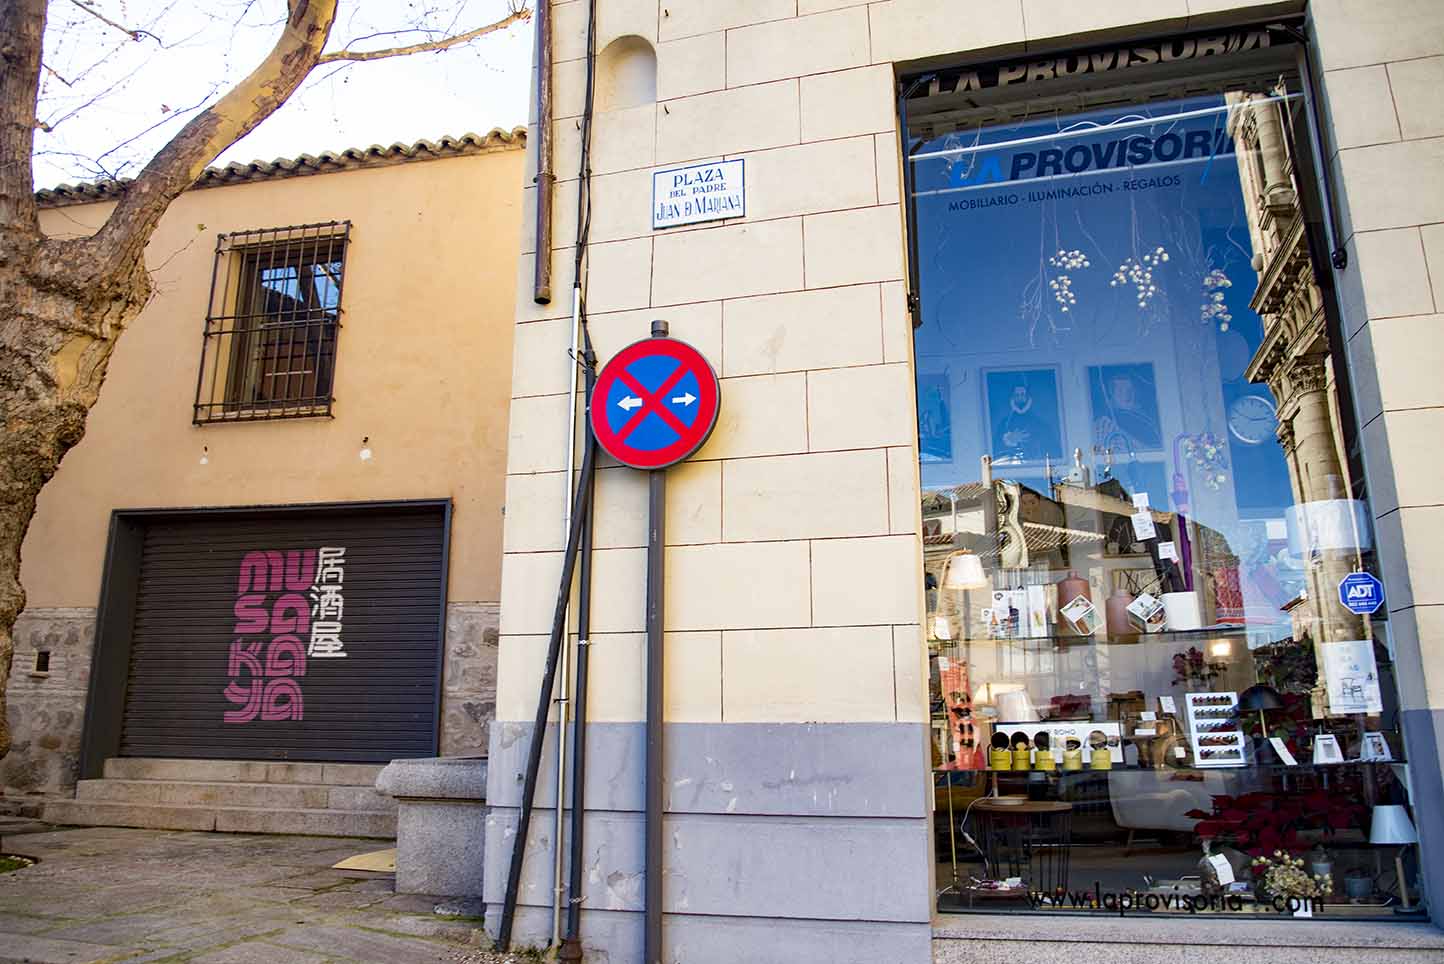 El nuevo restaurante se ubicará en la plaza Padre Juan de Mariana, en el casco histórico de Toledo. Foto: Rebeca Arango.